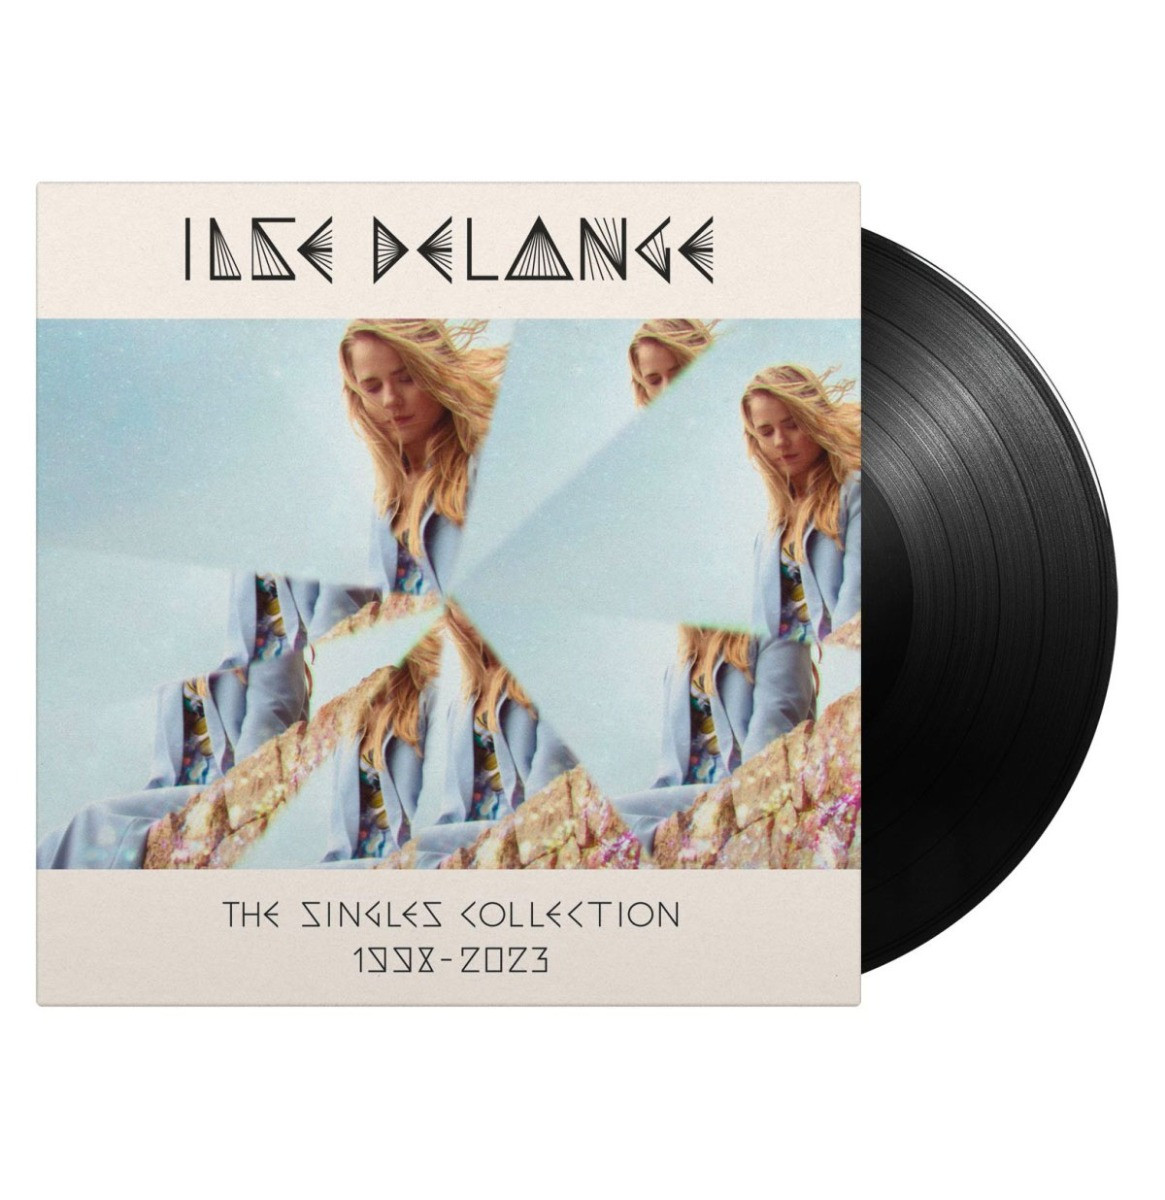 Ilse De Lange - The Singles Collection 1998-2023 3LP